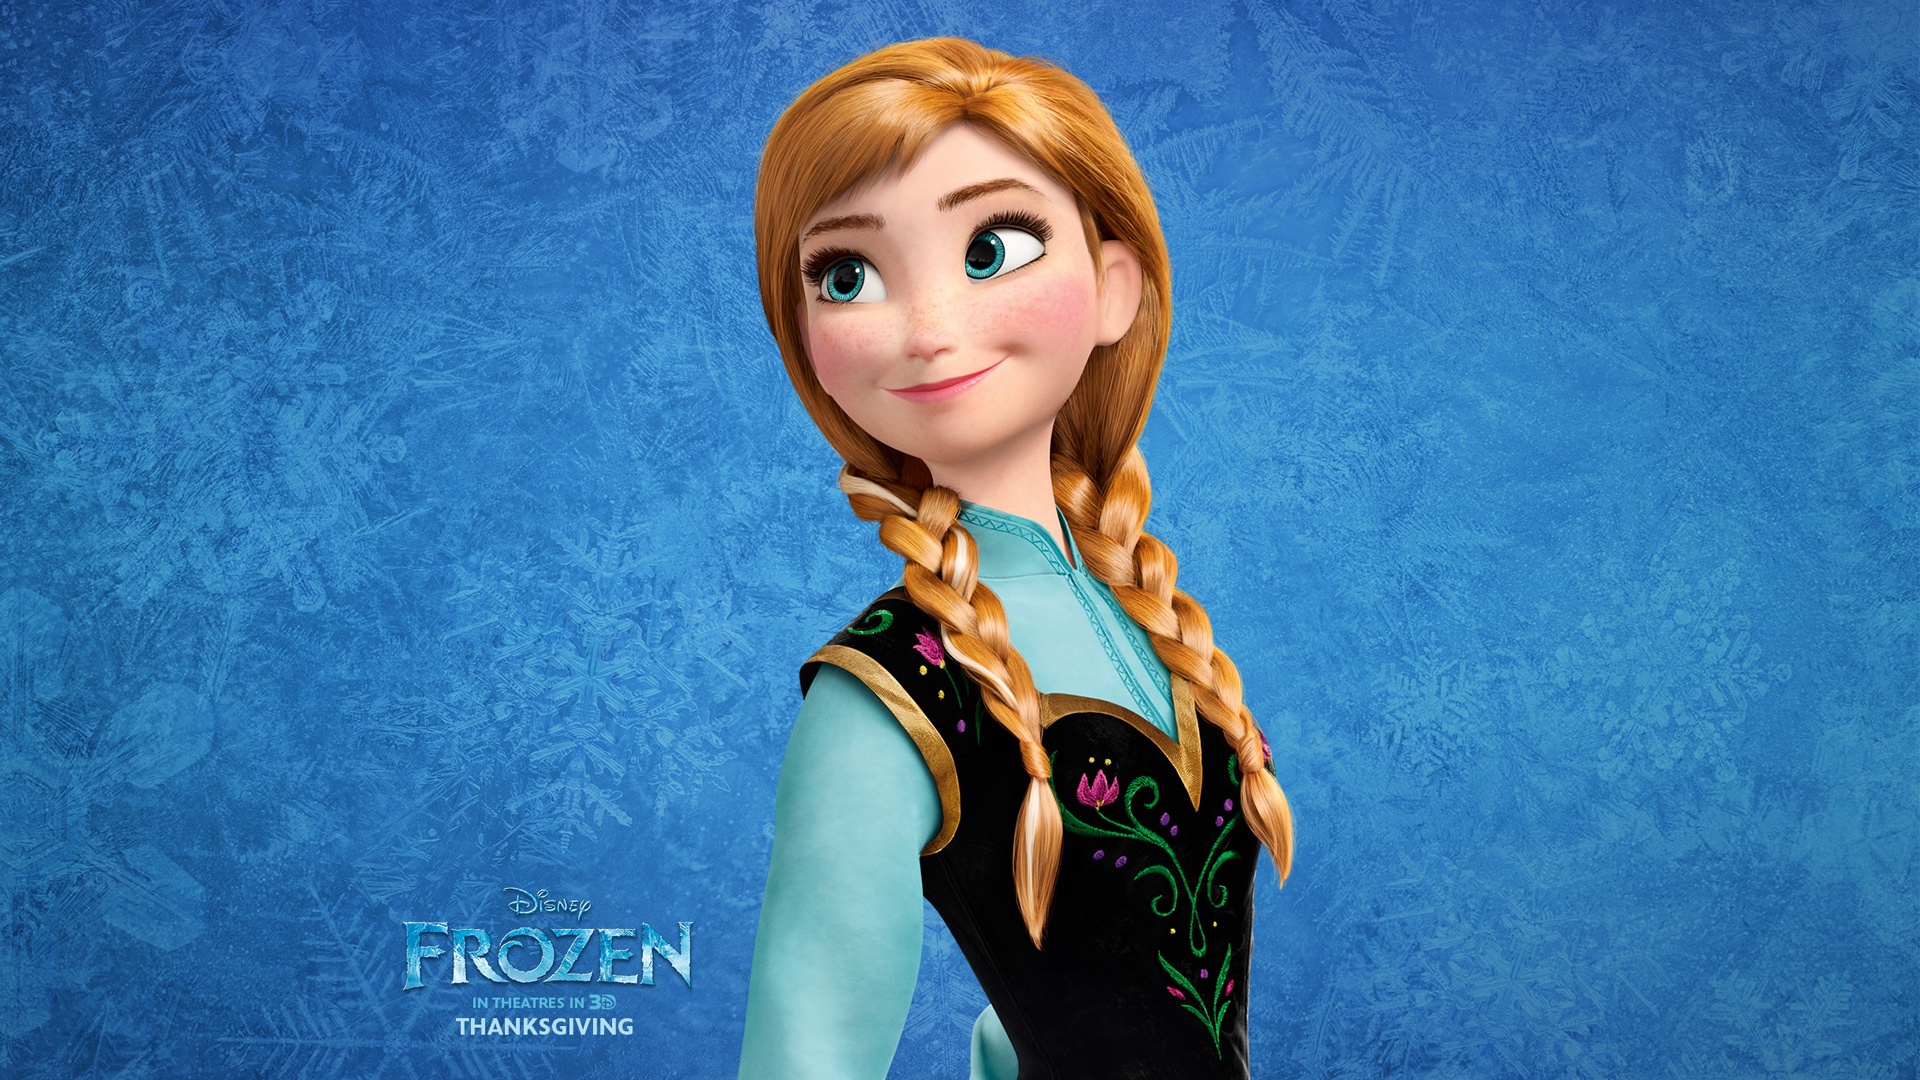 Wallpaper Frozen Close-up Princess Anna - Princesa Anna De Frozen - HD Wallpaper 